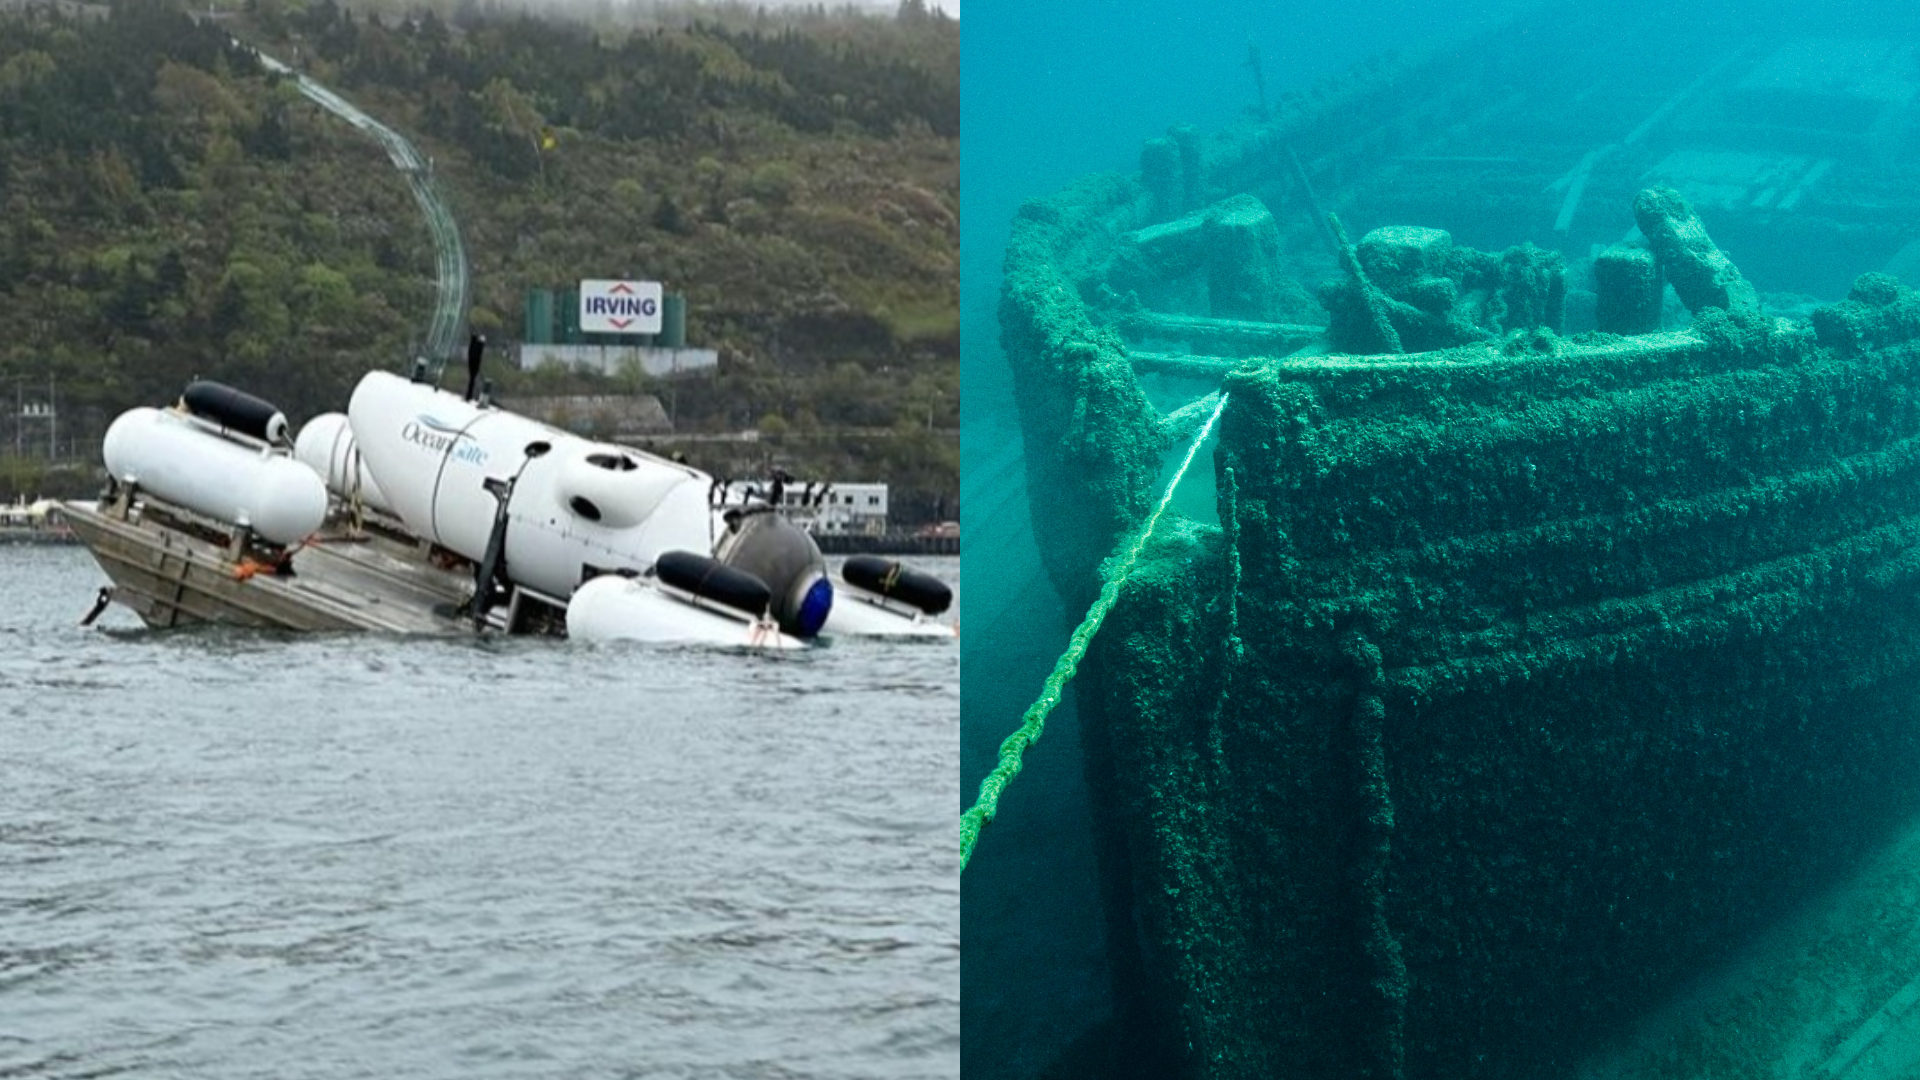 Submarino que visita o Titanic some: há sobreviventes? (Foto: Reprodução)